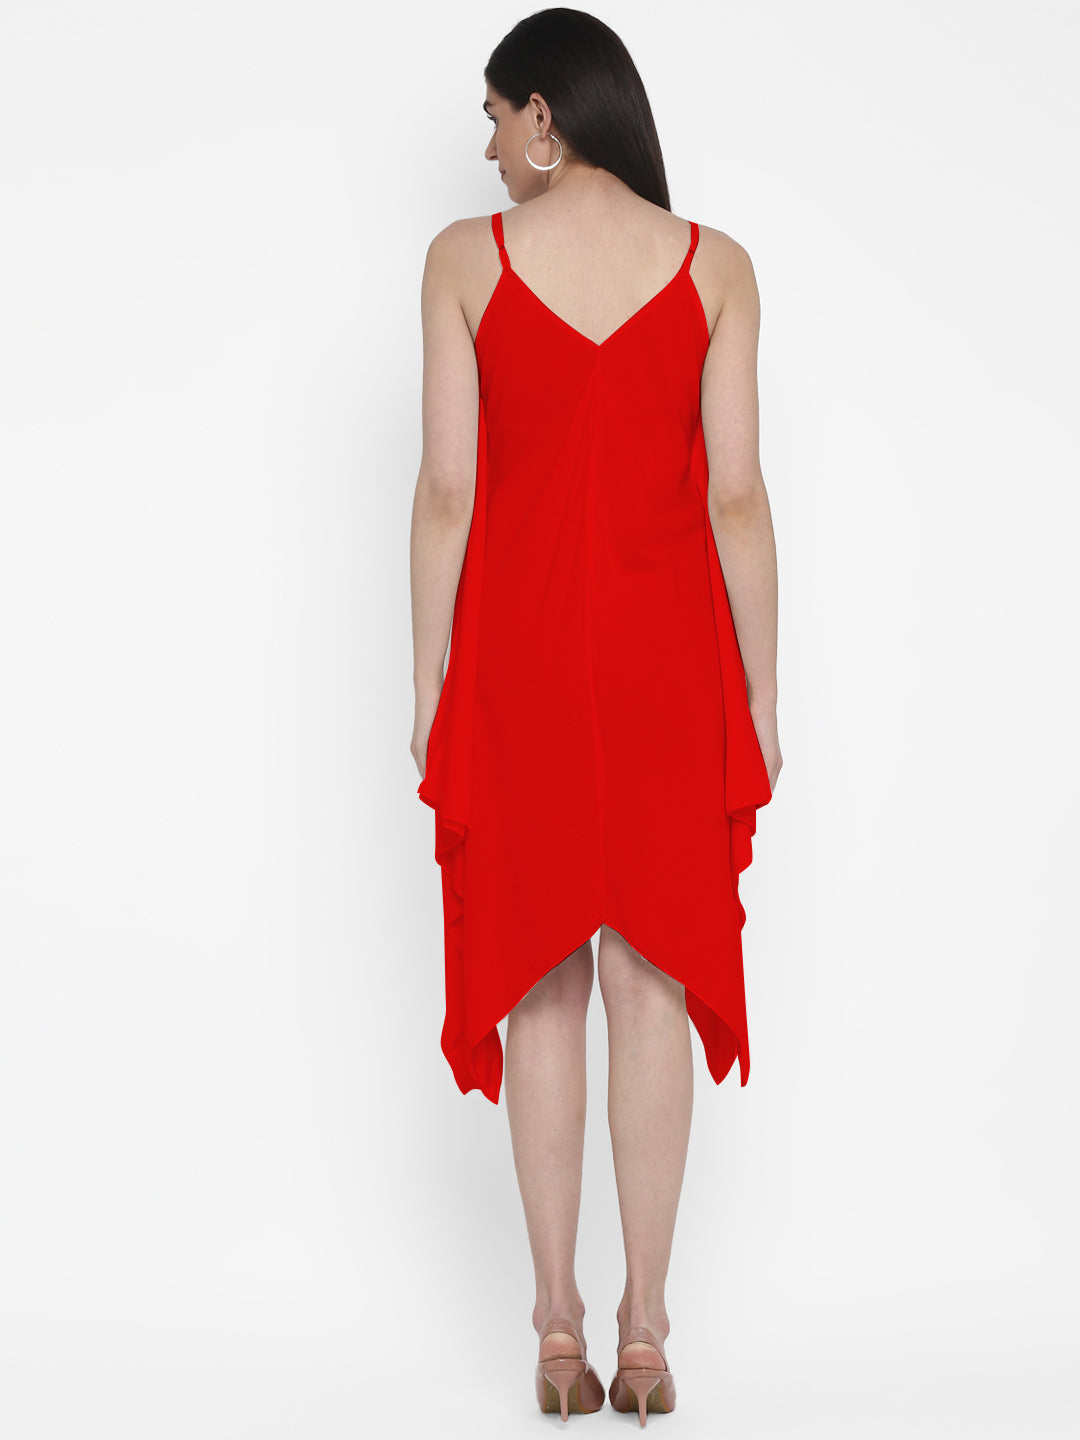 Free Size Stylish Red Midi Dress